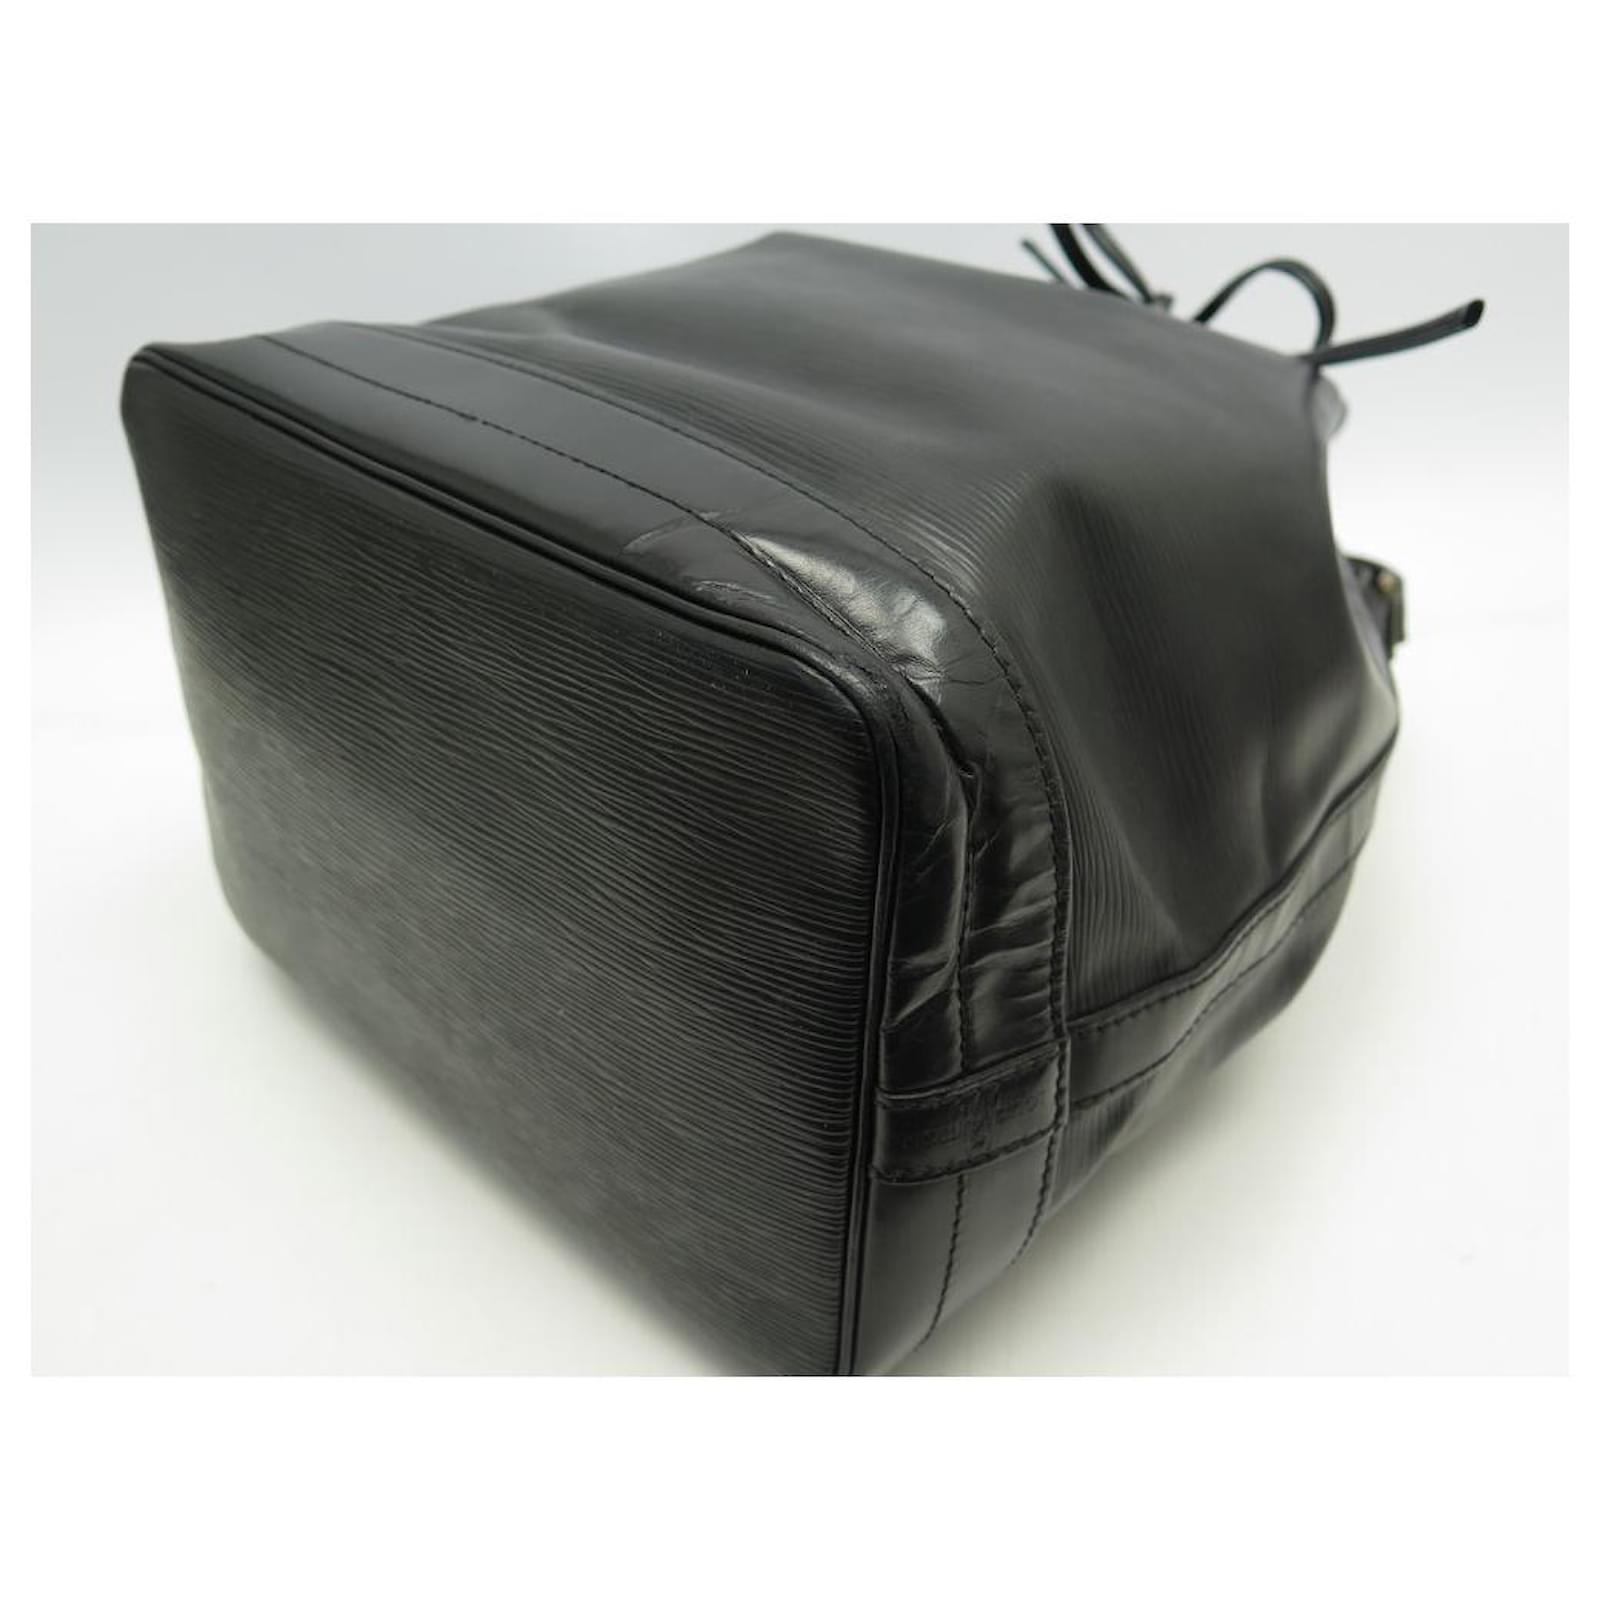 RDC12831 Authentic Louis Vuitton Vintage Black Epi Leather Noe GM Bag